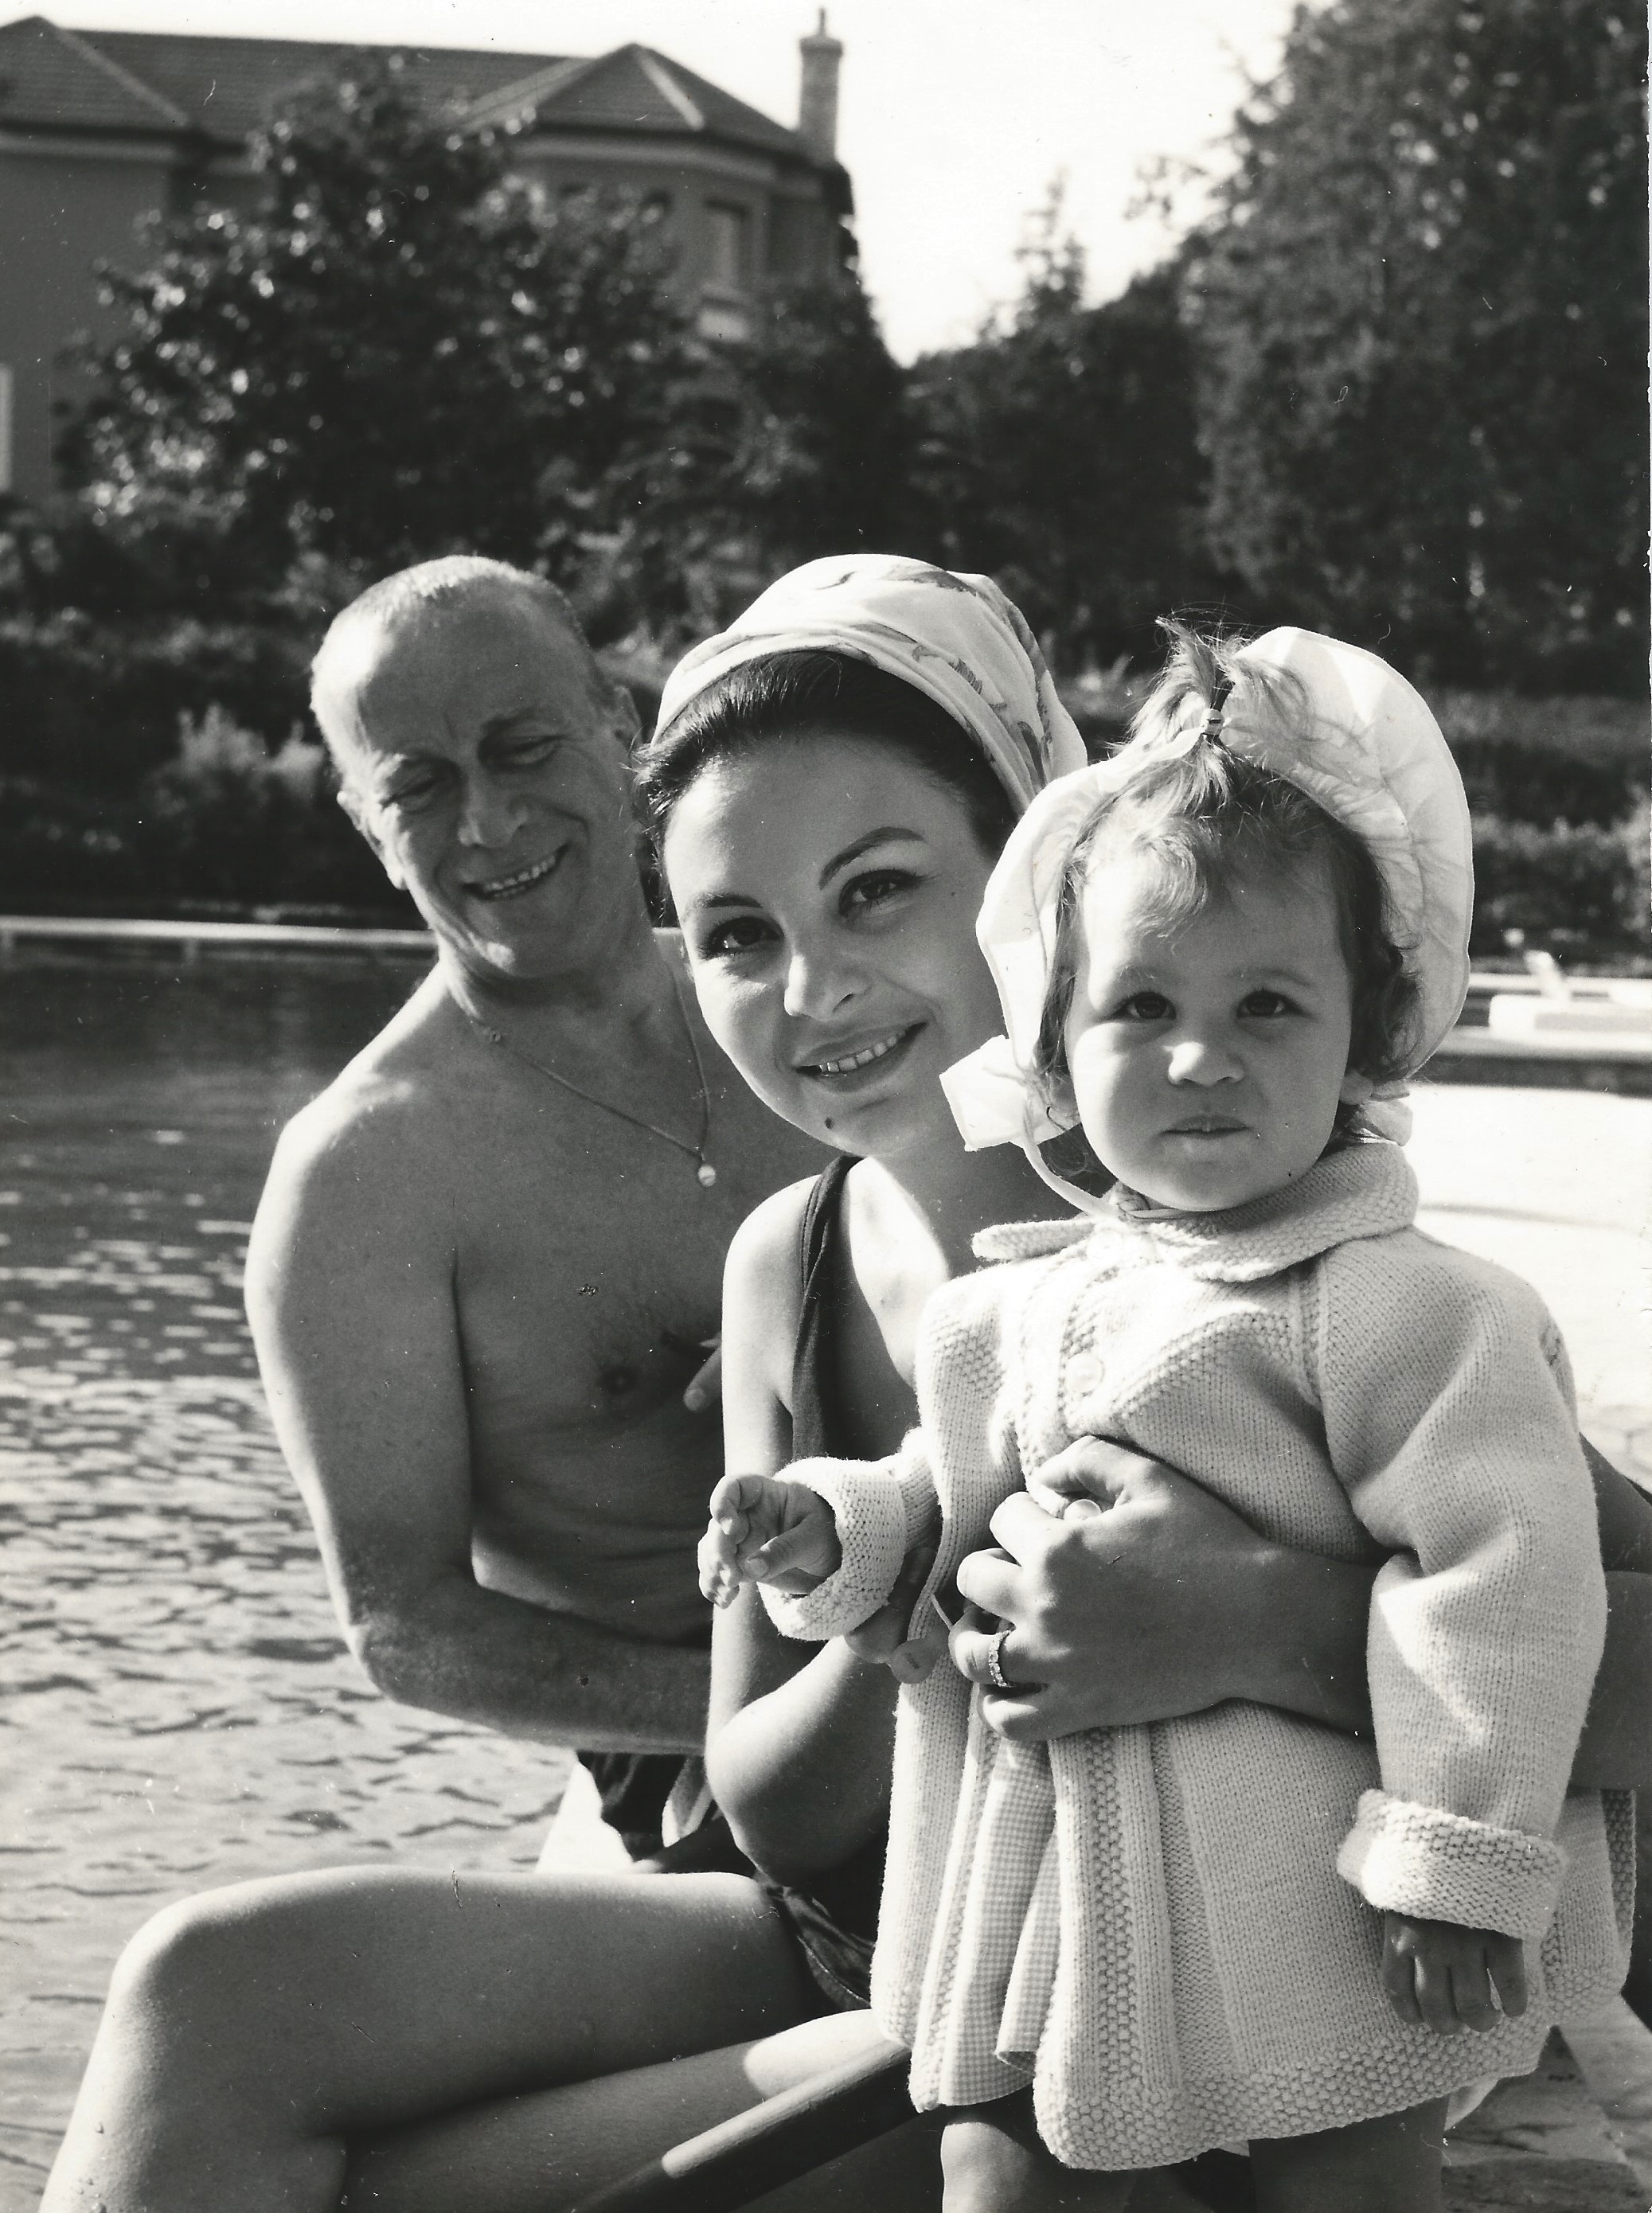 Pappa, Mamma, and Me at the Villa Camiluccia, Rome, 1965 (Patricia Gucci)